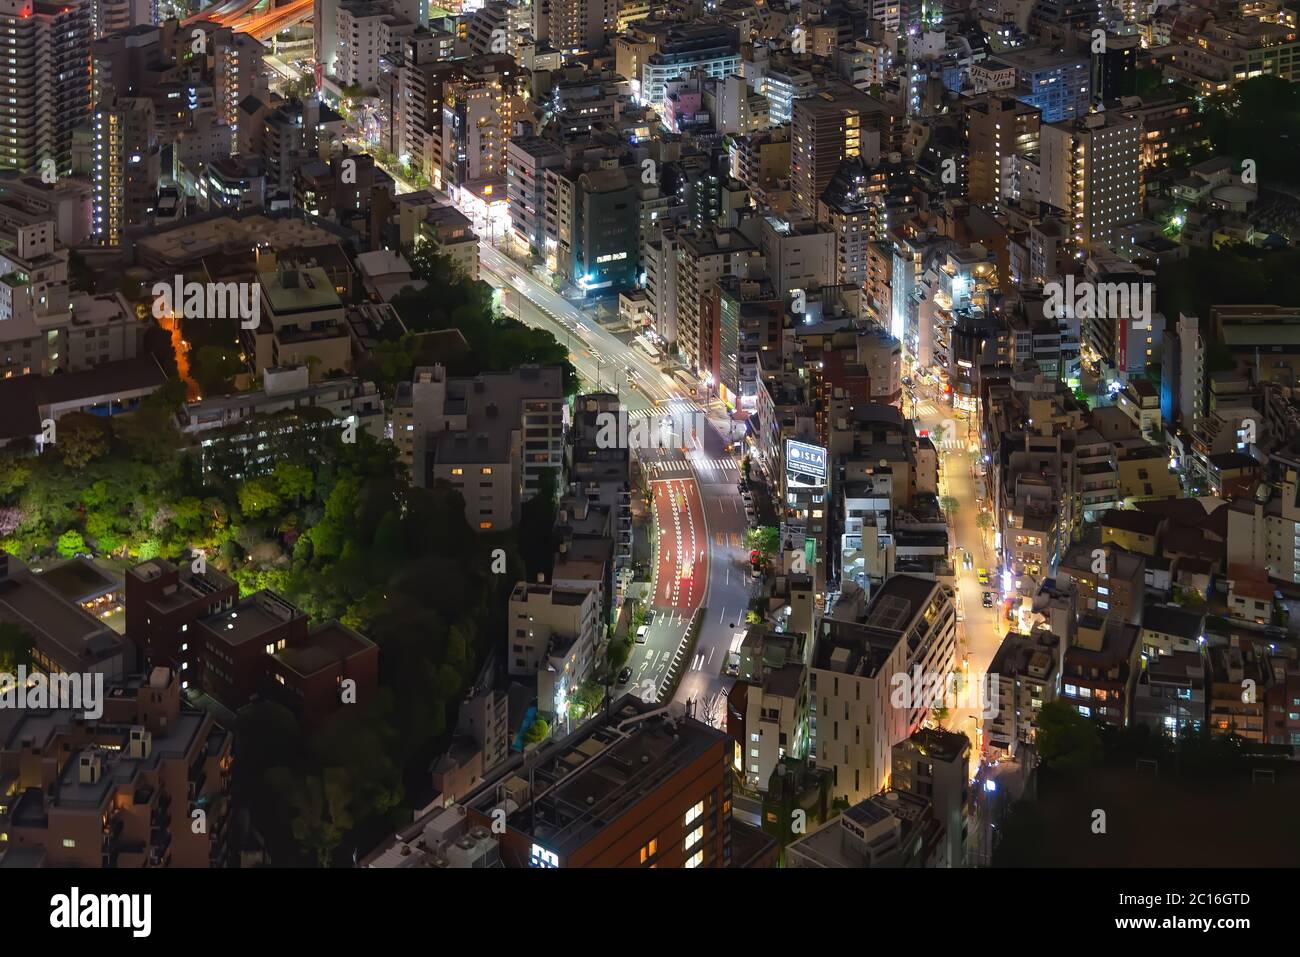 Tokio, Japan - 20. April 2014: Luftaufnahme des Roppongi-Viertels bei Nacht. Roppongi ist berühmt als Heimat der reichen Roppongi Hills Gegend Stockfoto